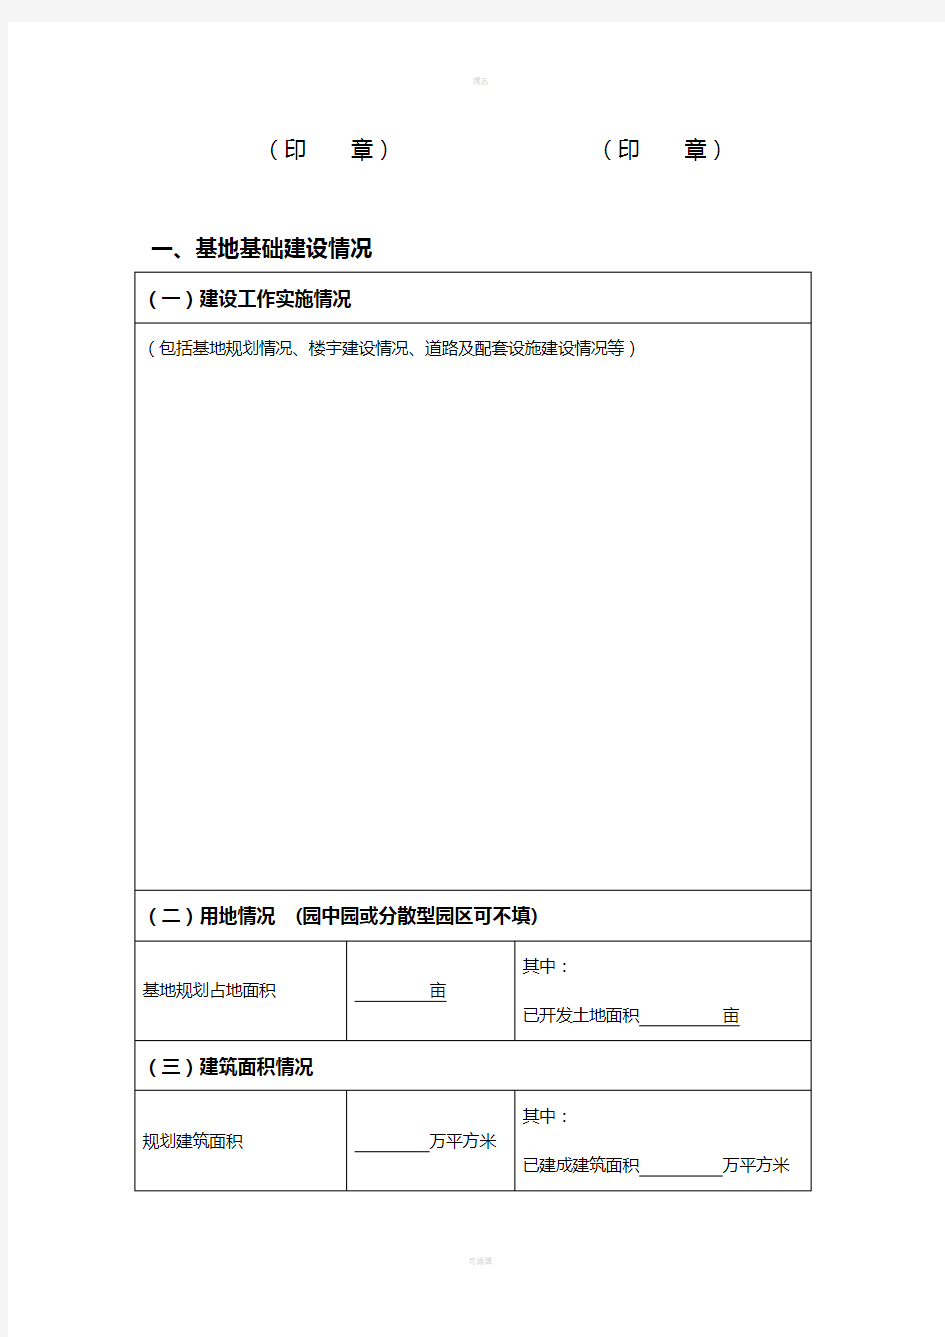 河南省电子商务示范基地统计表(一)